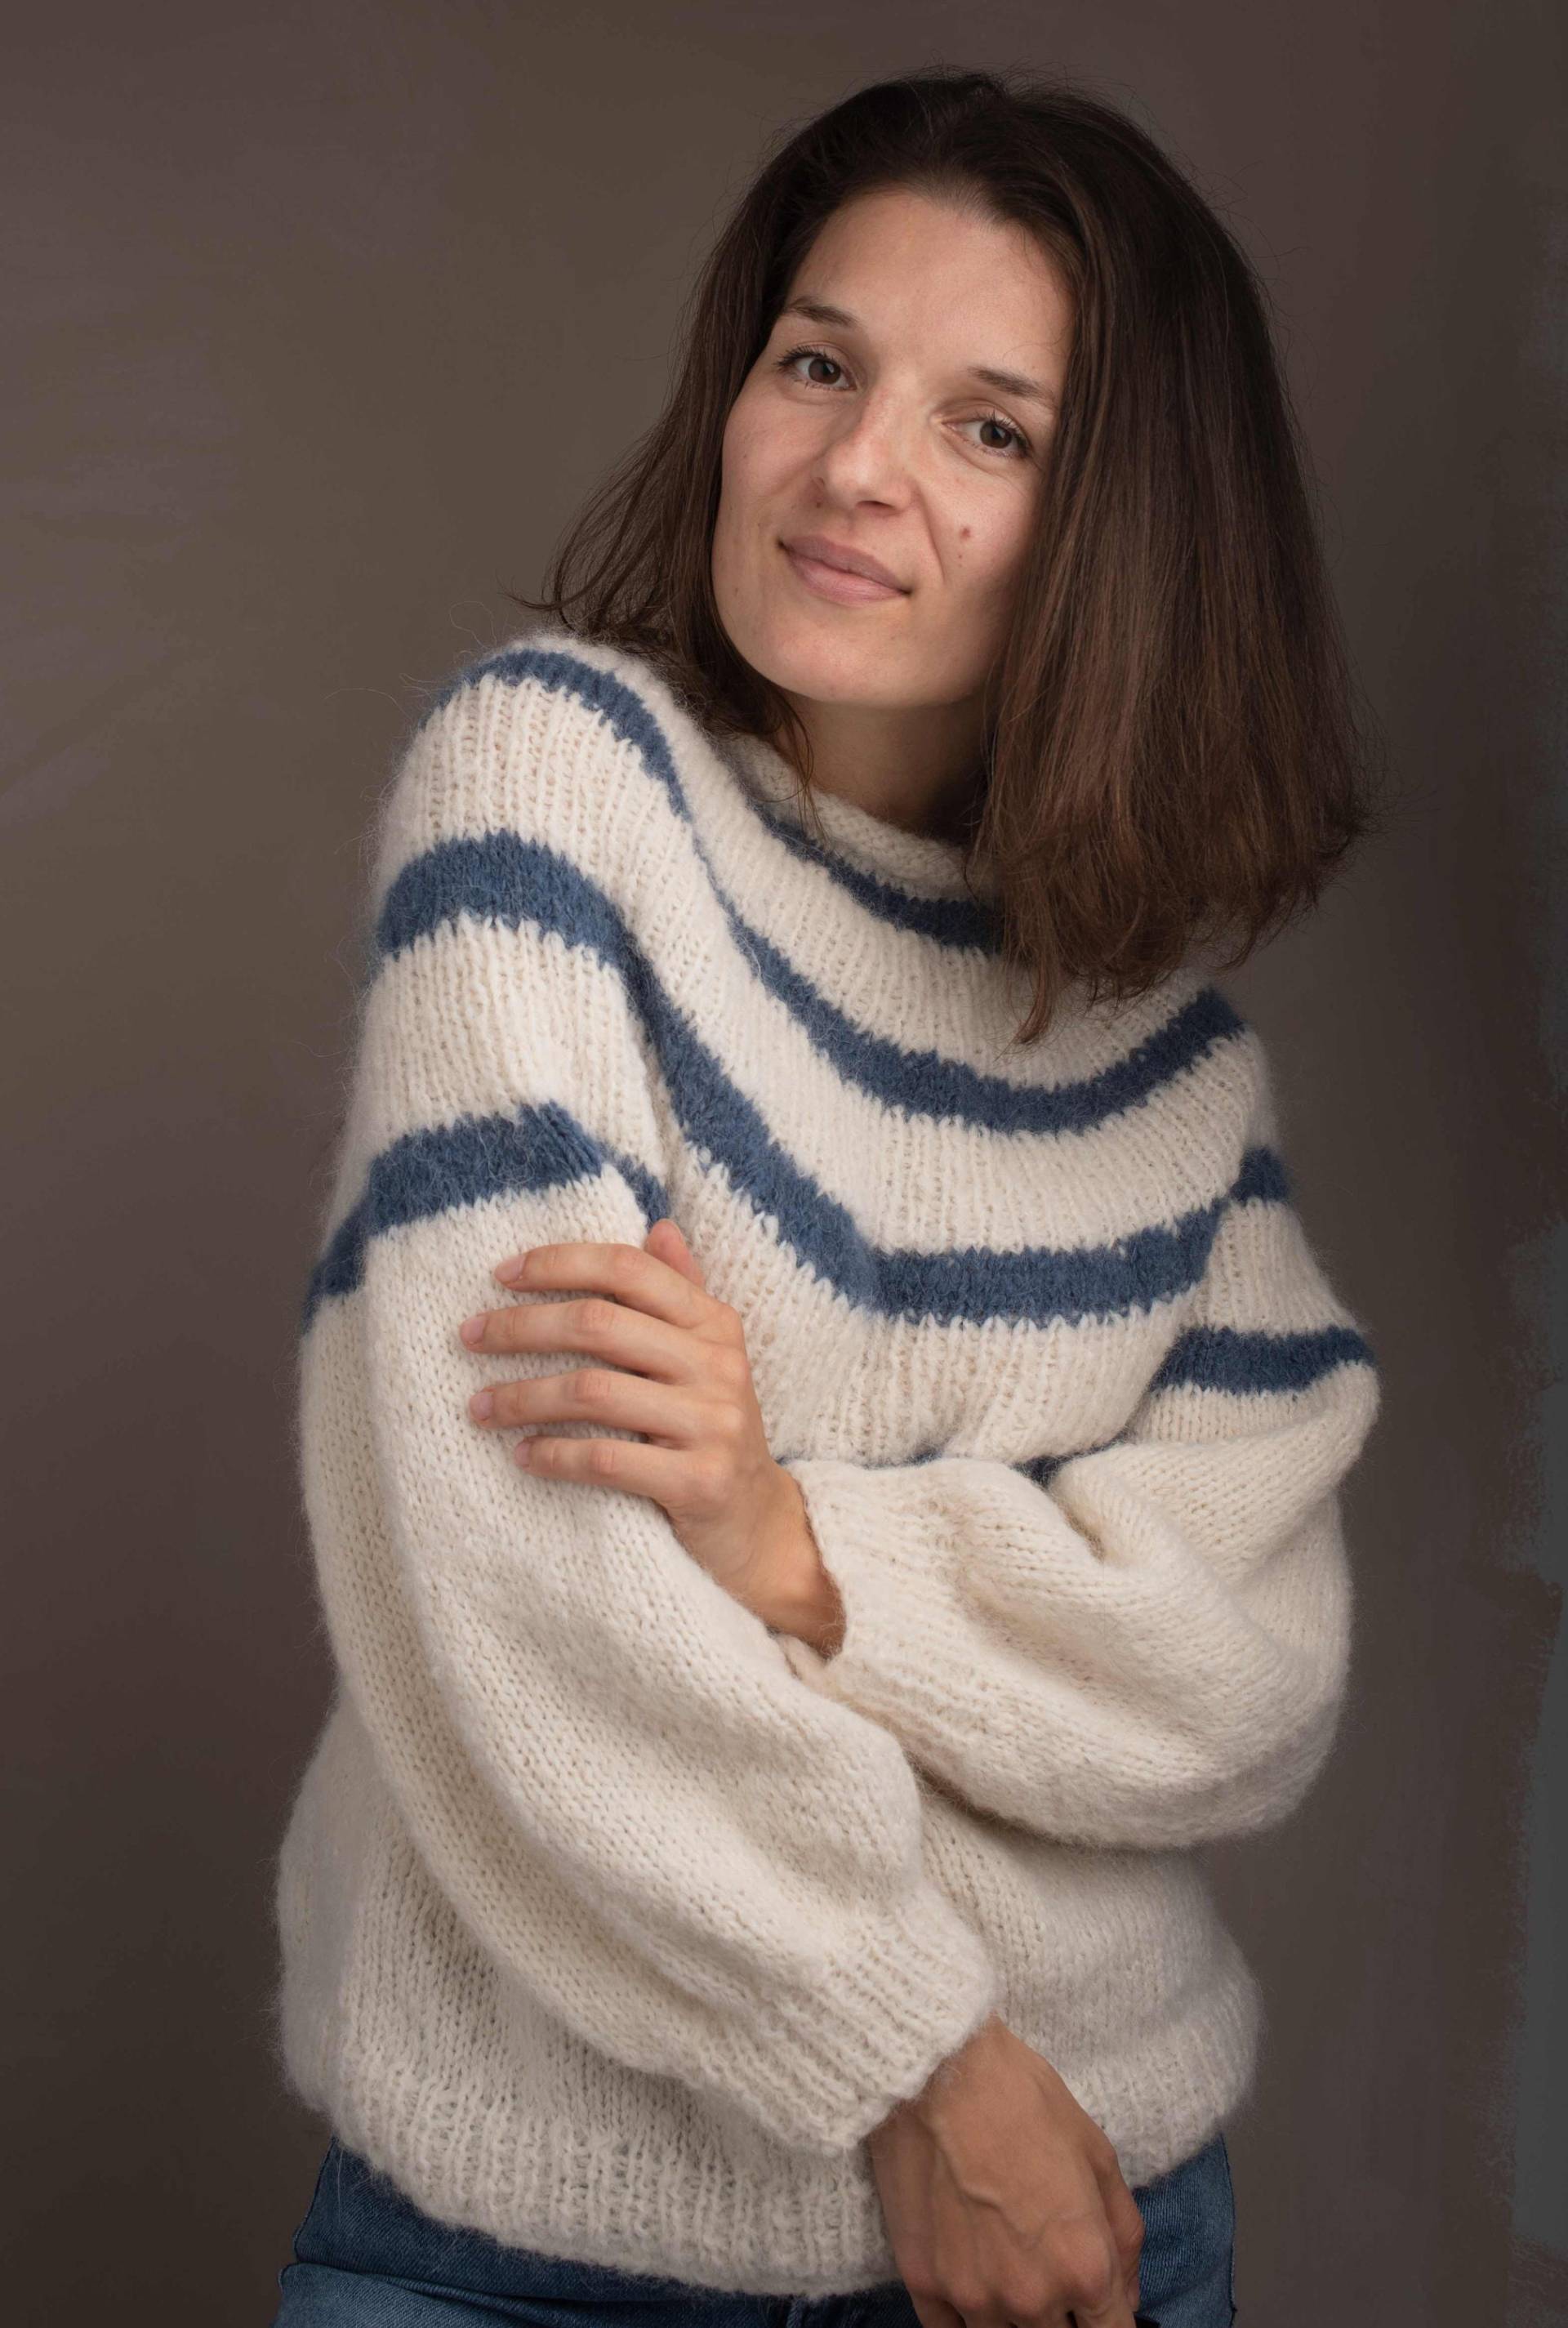 Flauschiger Winter Pullover, Streifen Strickpullover, Alpaka Offwhite Merino Wolle Frauen Pullover von KnitCoutureStore